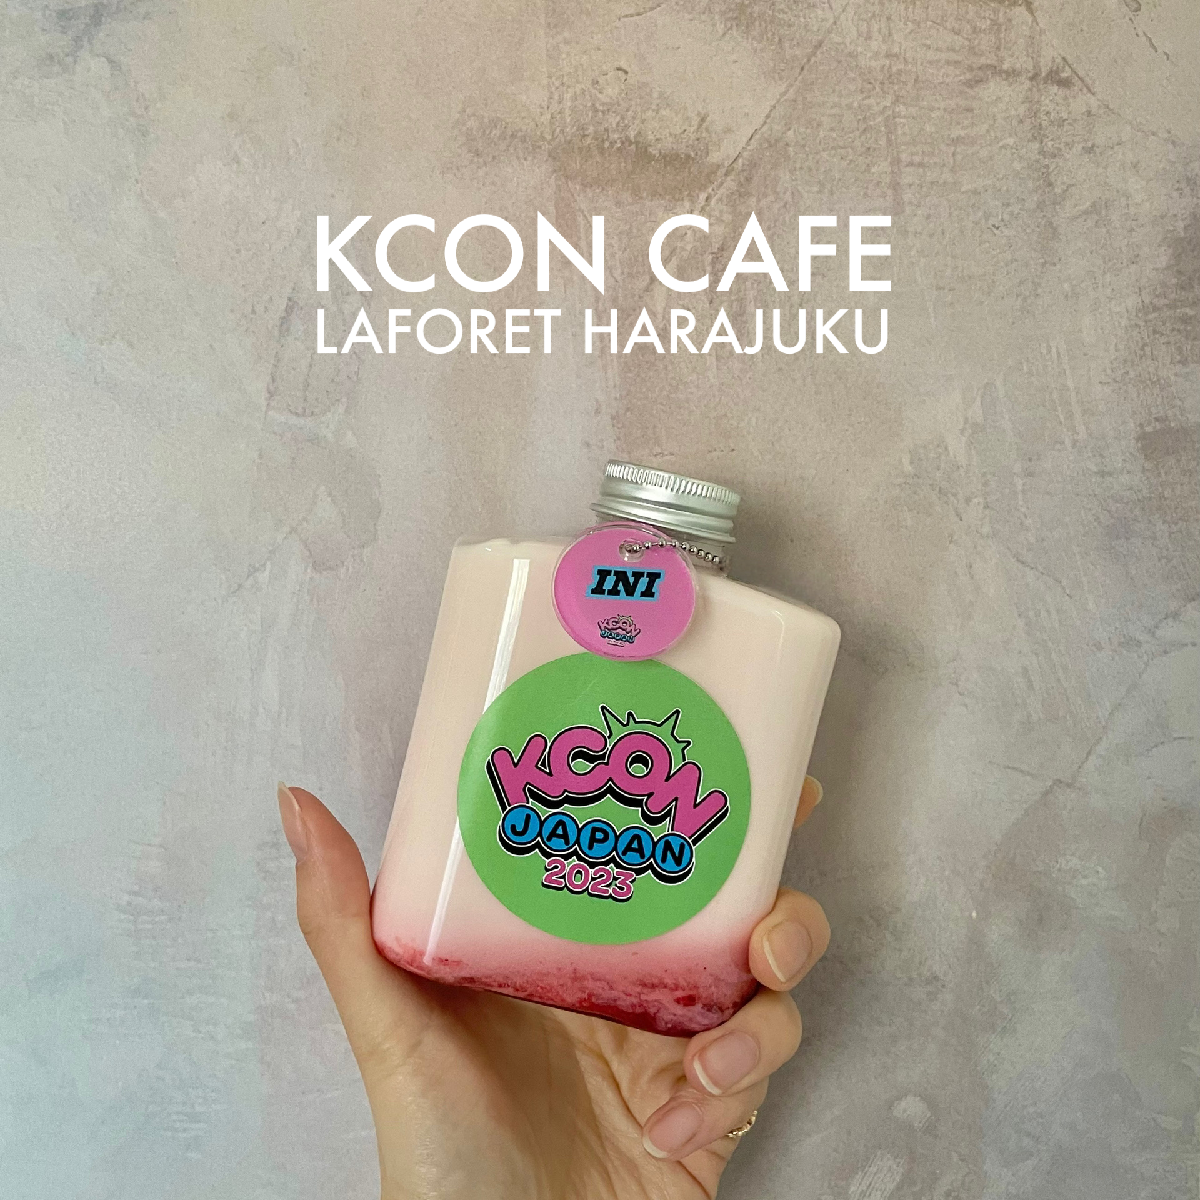 【期間限定カフェ】人気K-POPイベント《KCON》を体感できるカフェがおすすめ